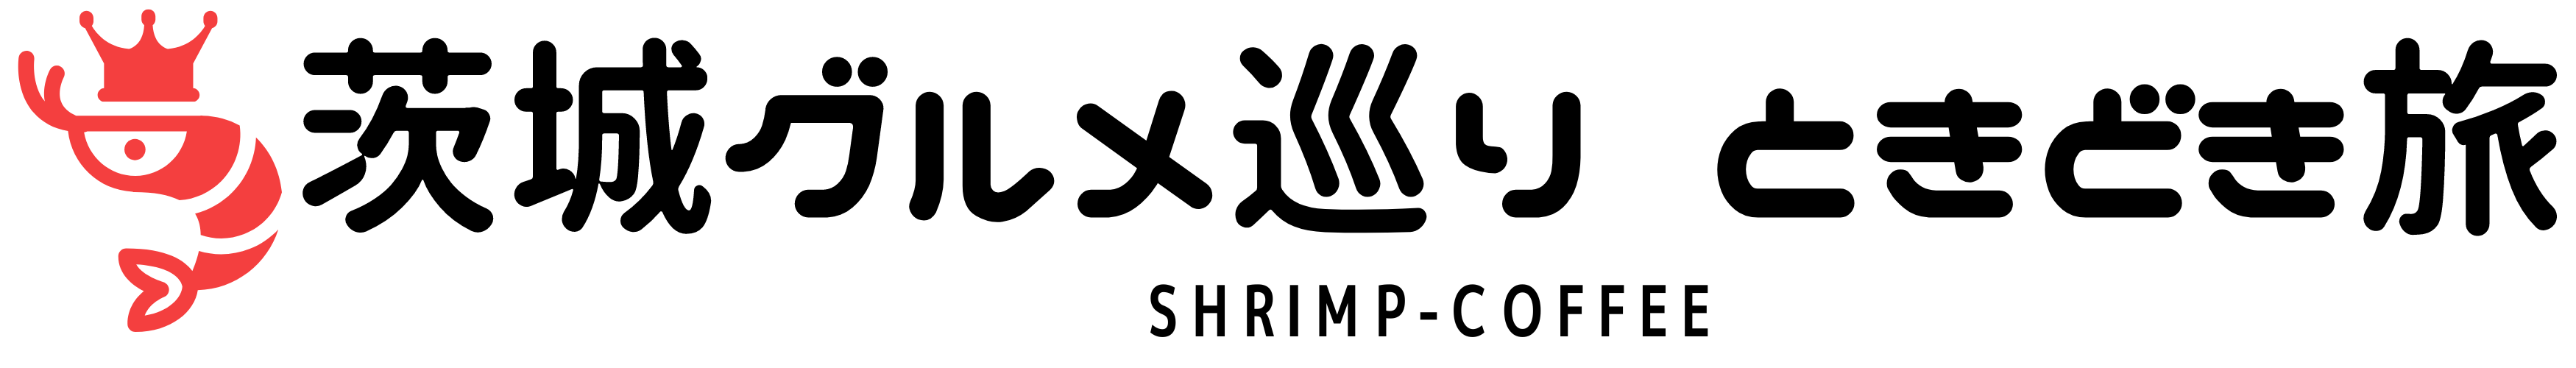 shrimp-coffee